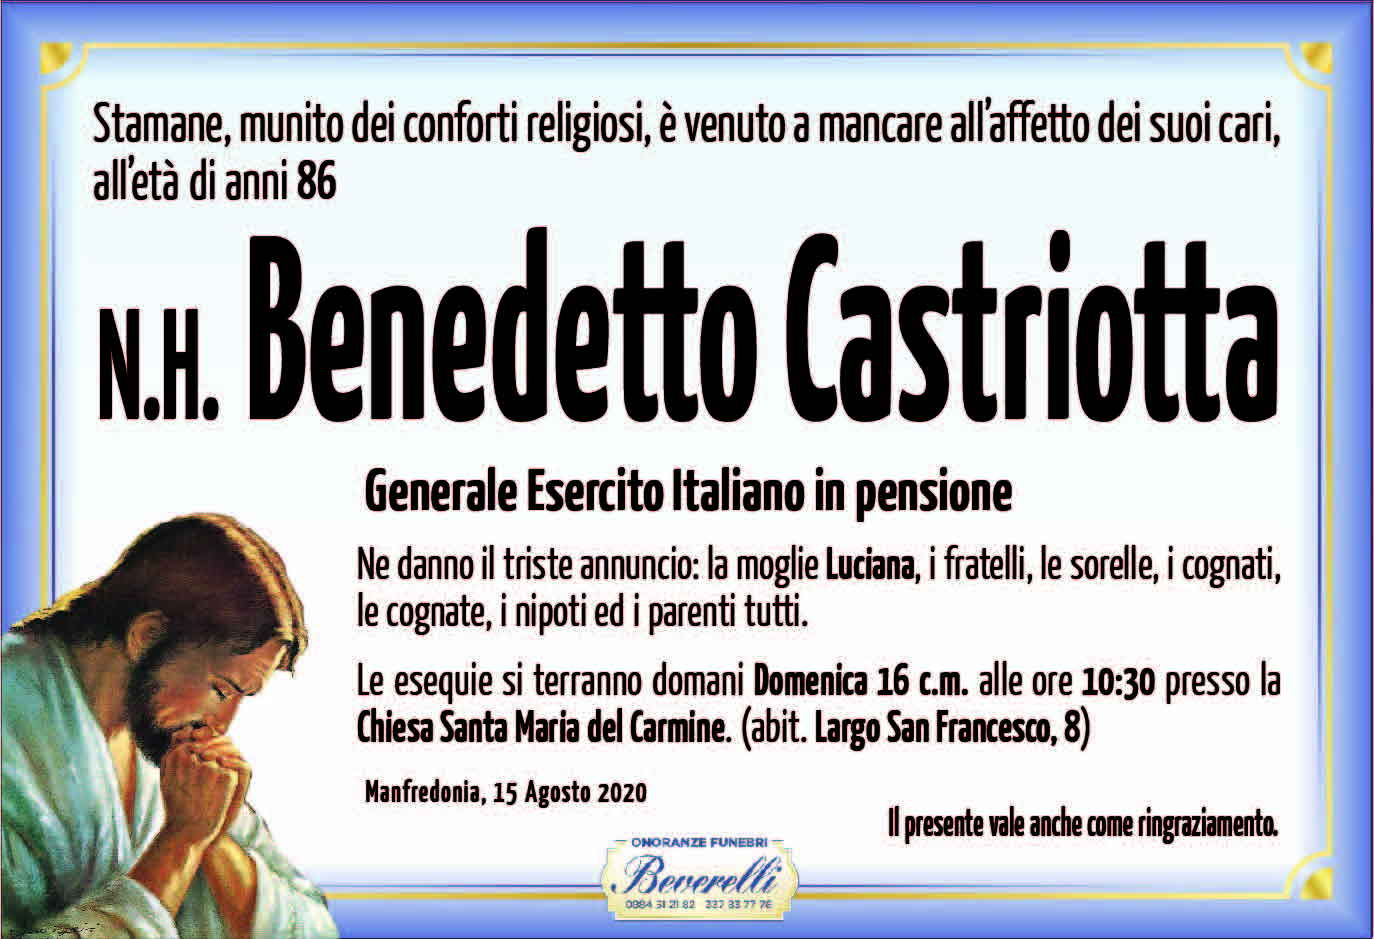 Benedetto Castriotta